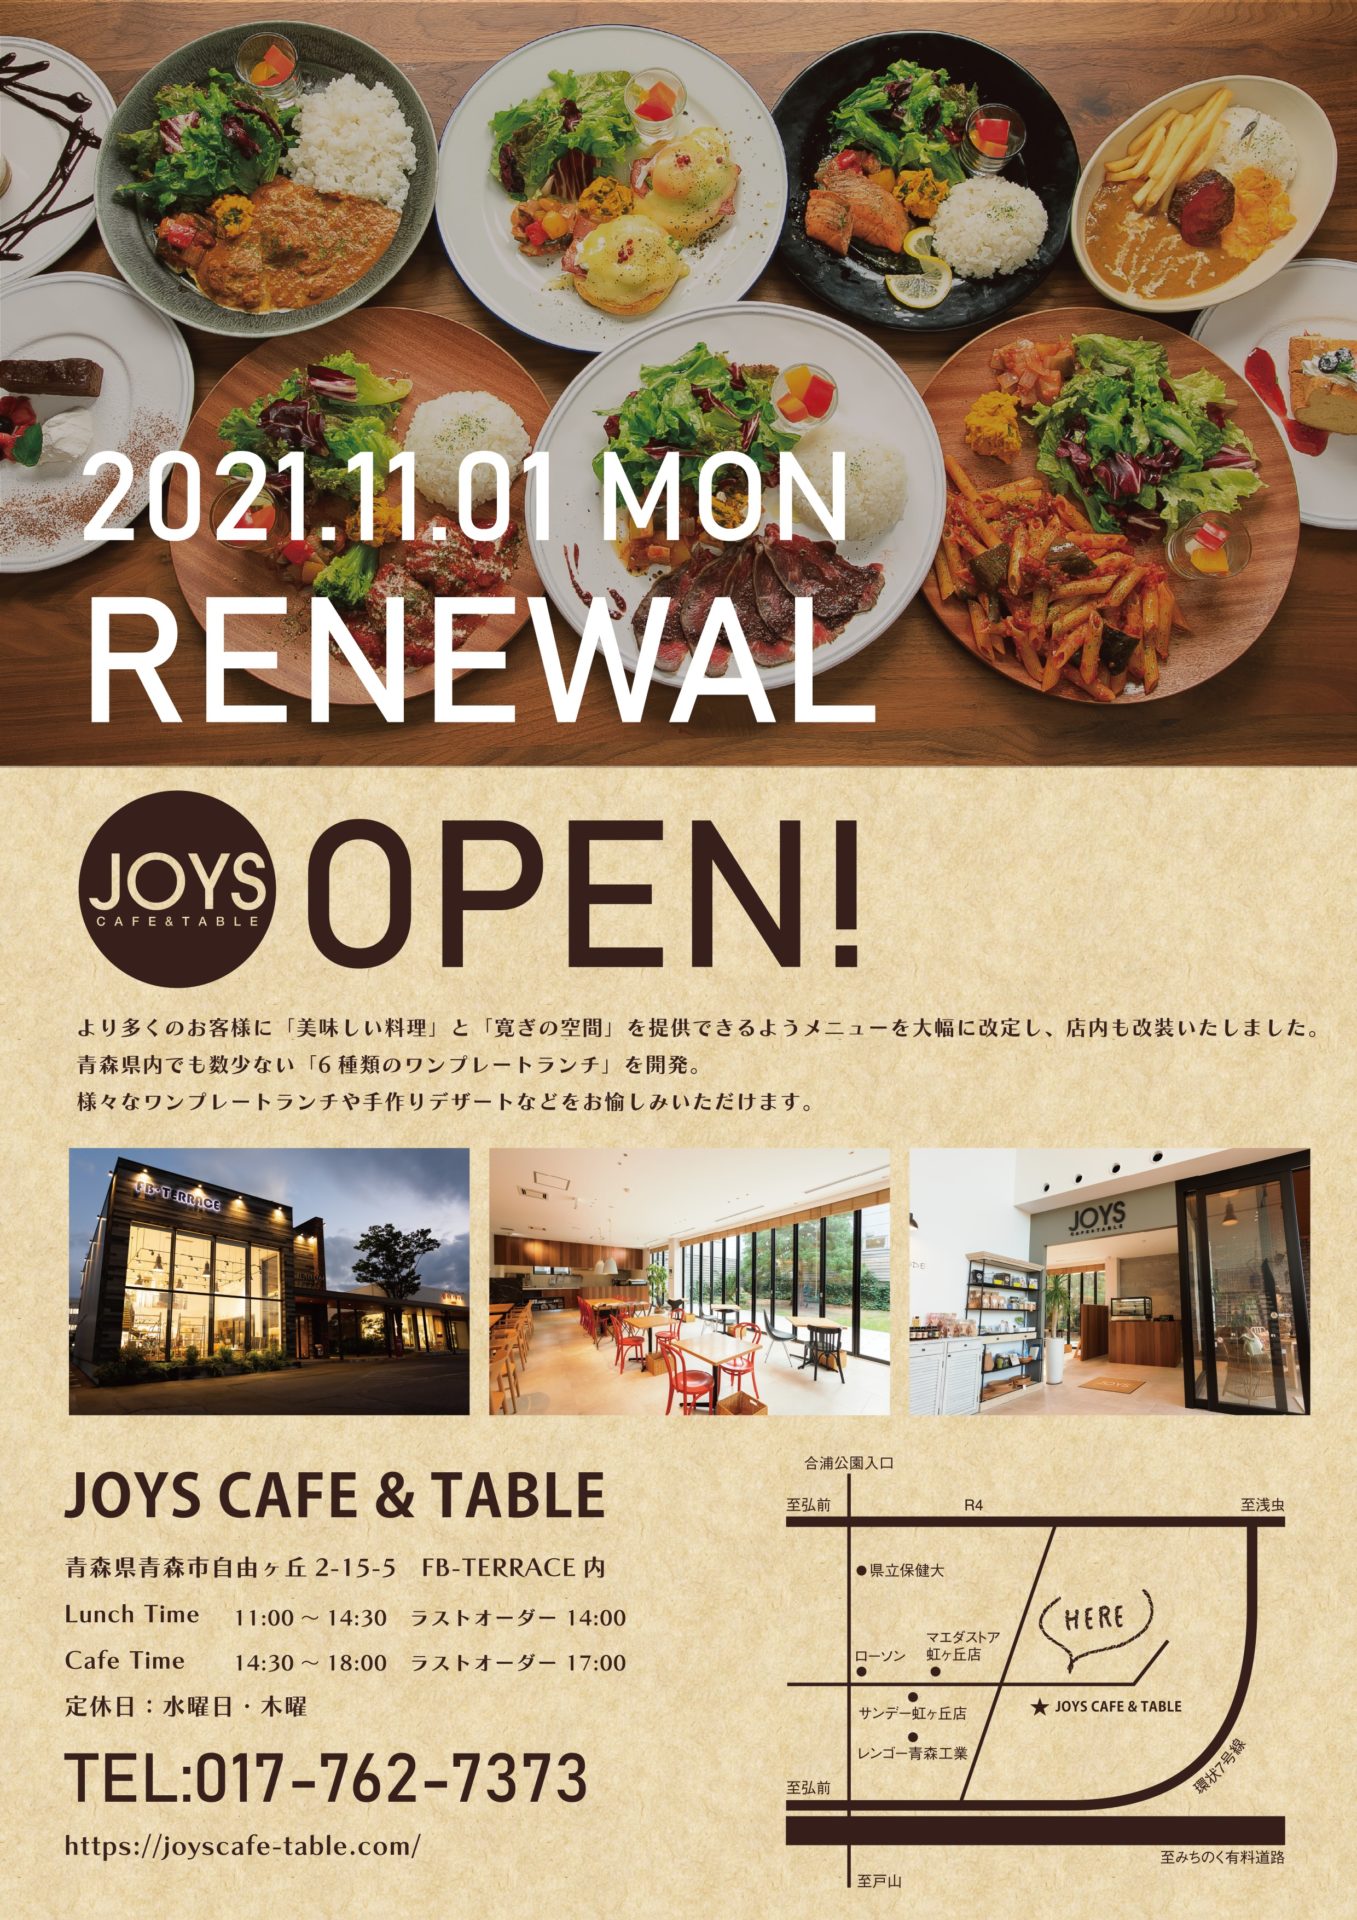 【オープン情報】11月1日、JOYS CAFE & TABLE がリニューアルオープンします！